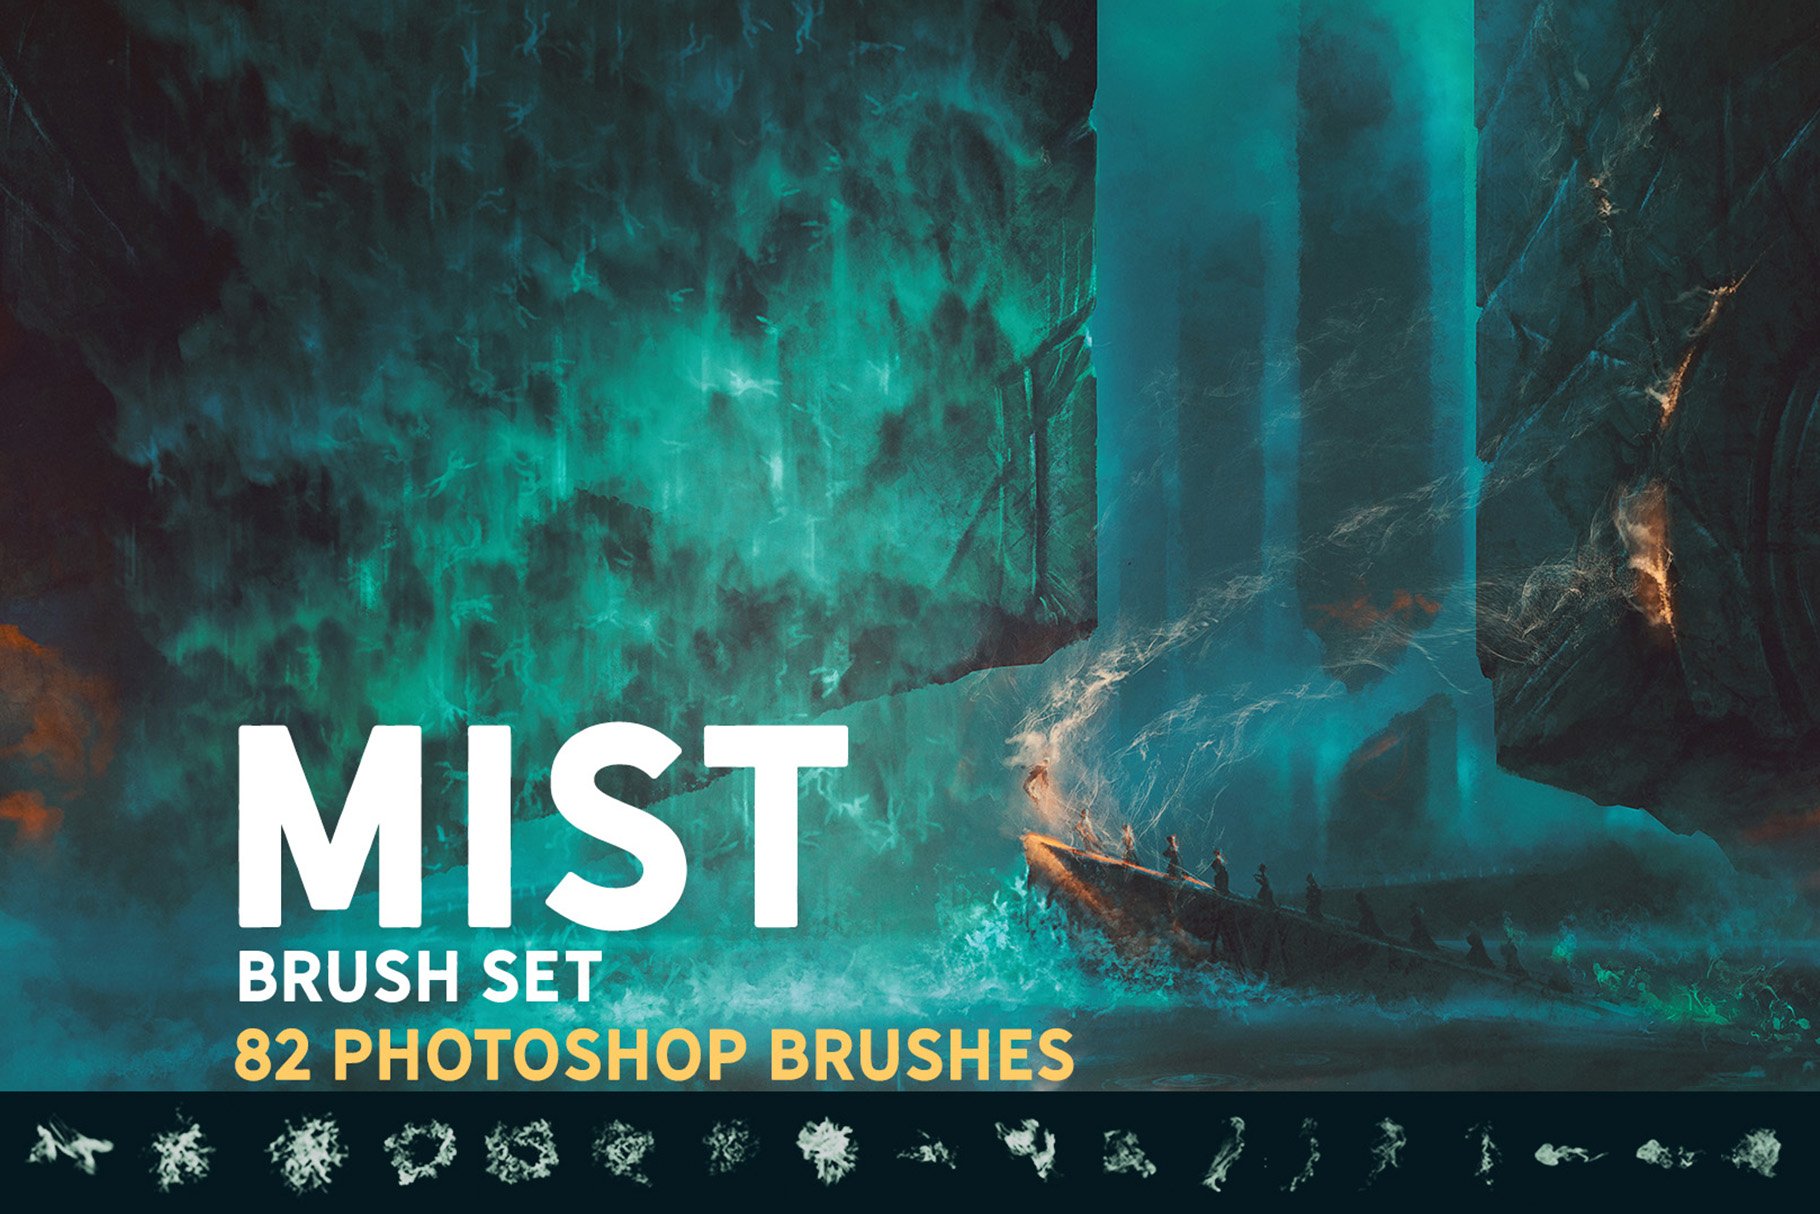 Mist Photoshop brush setcover image.